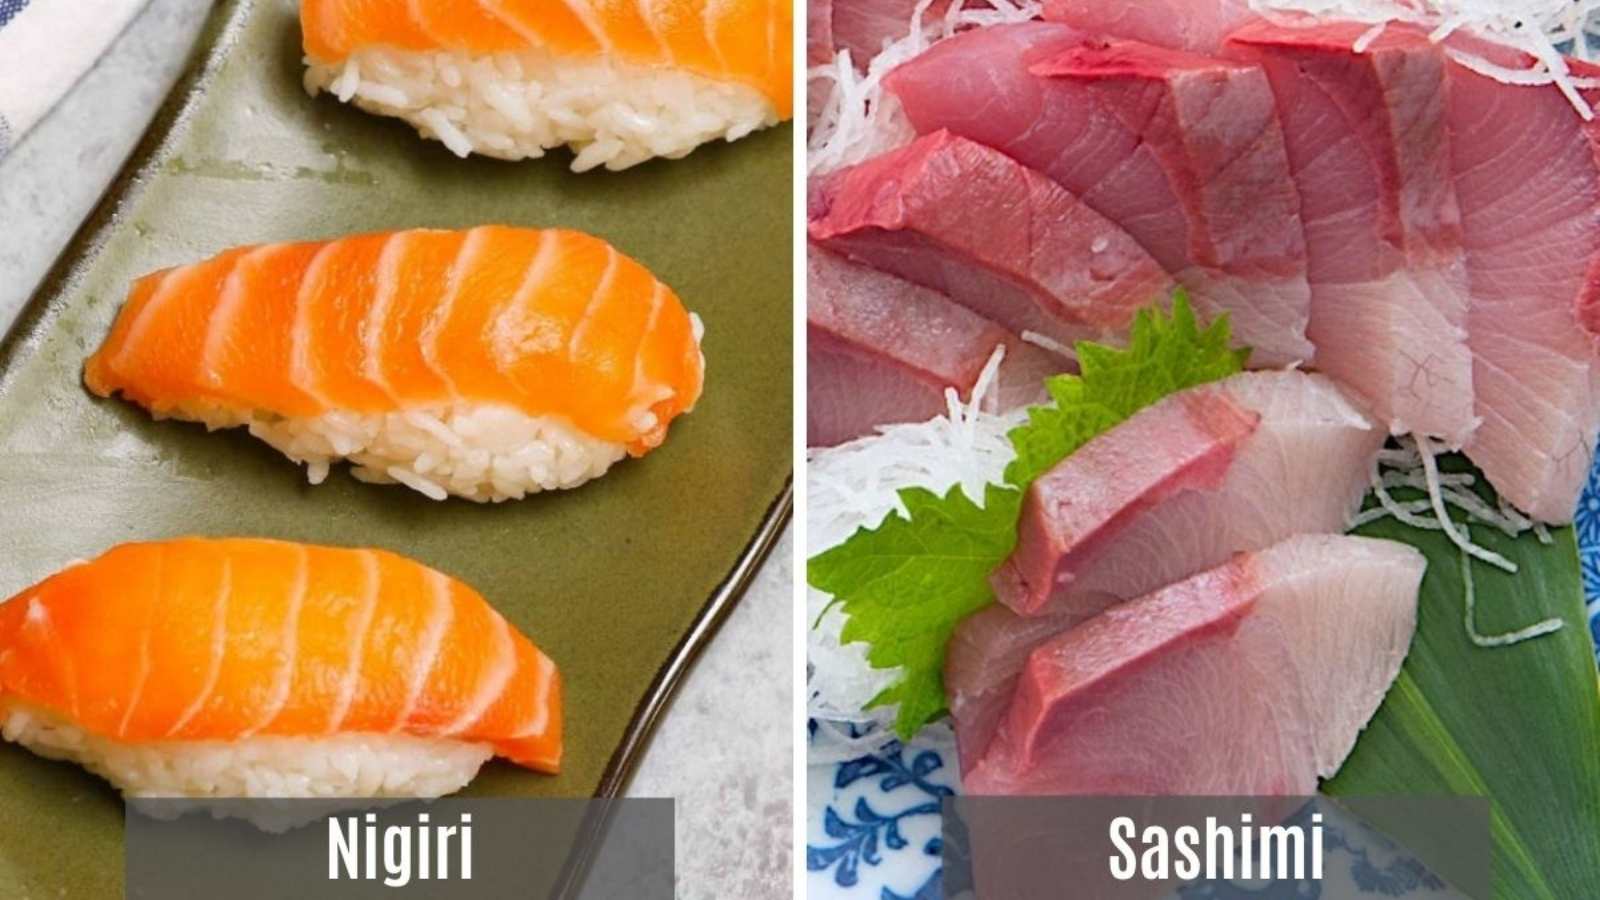 Tips on Sushi and Sashimi